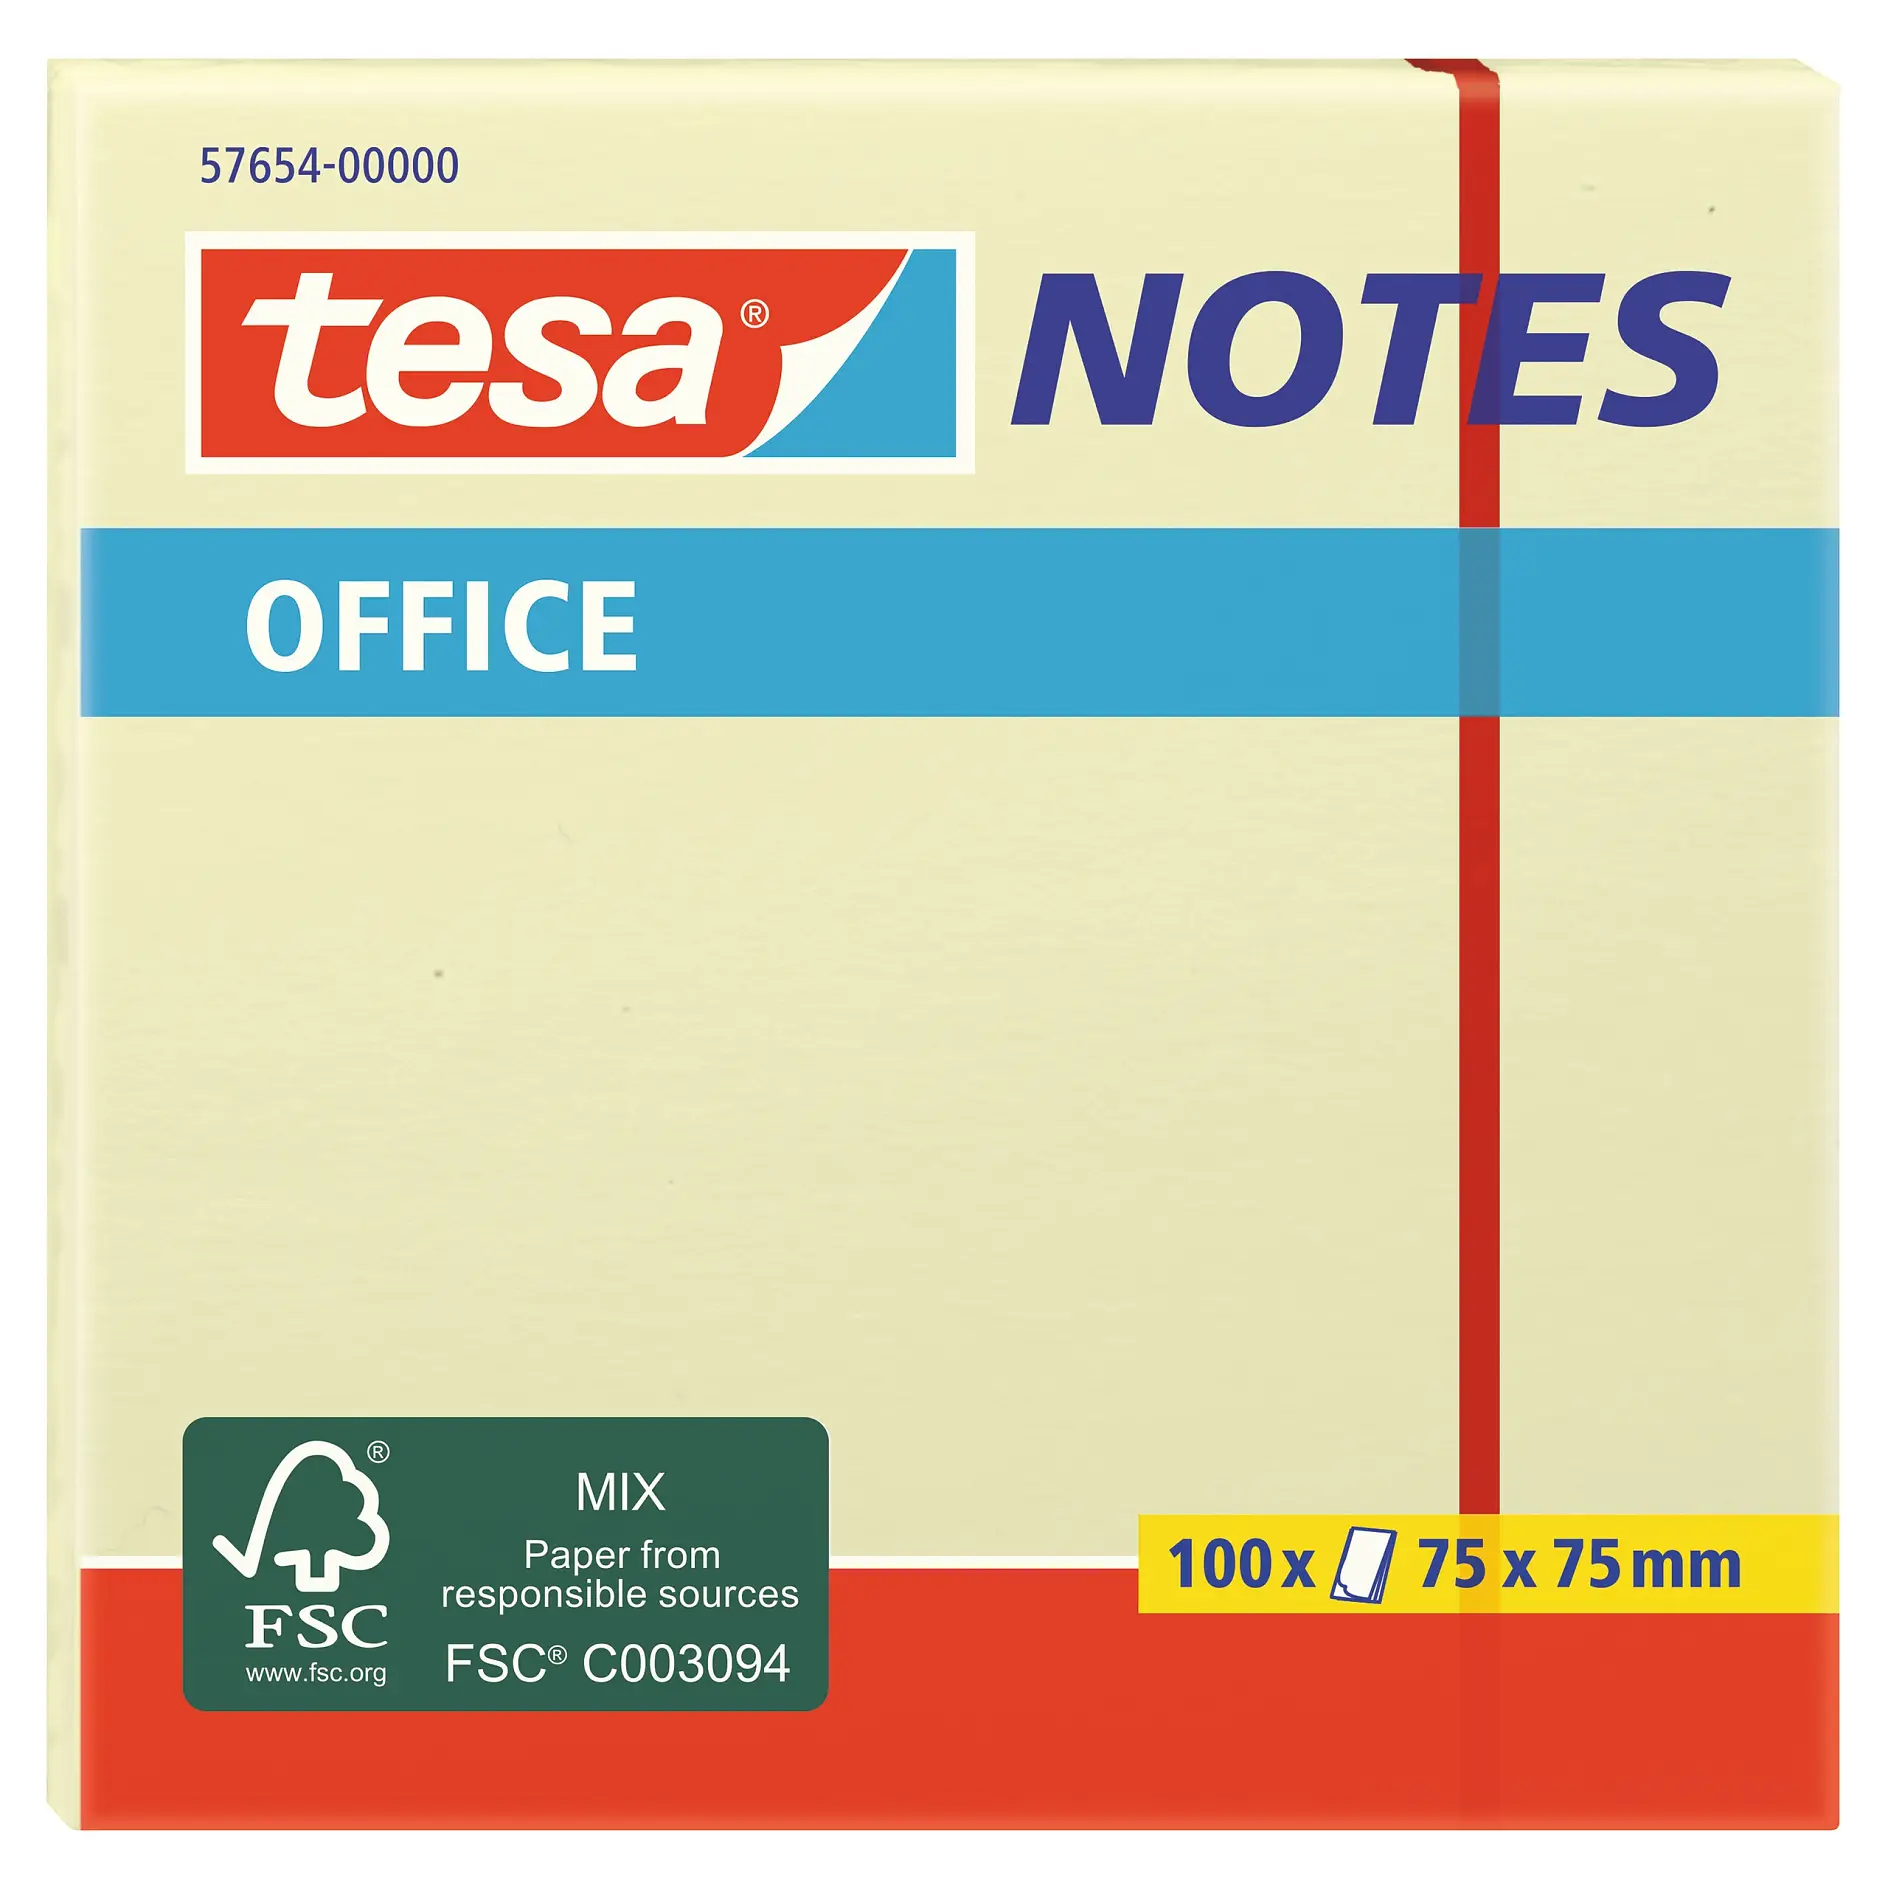 [en-en] tesa notes office 100x125:75mm